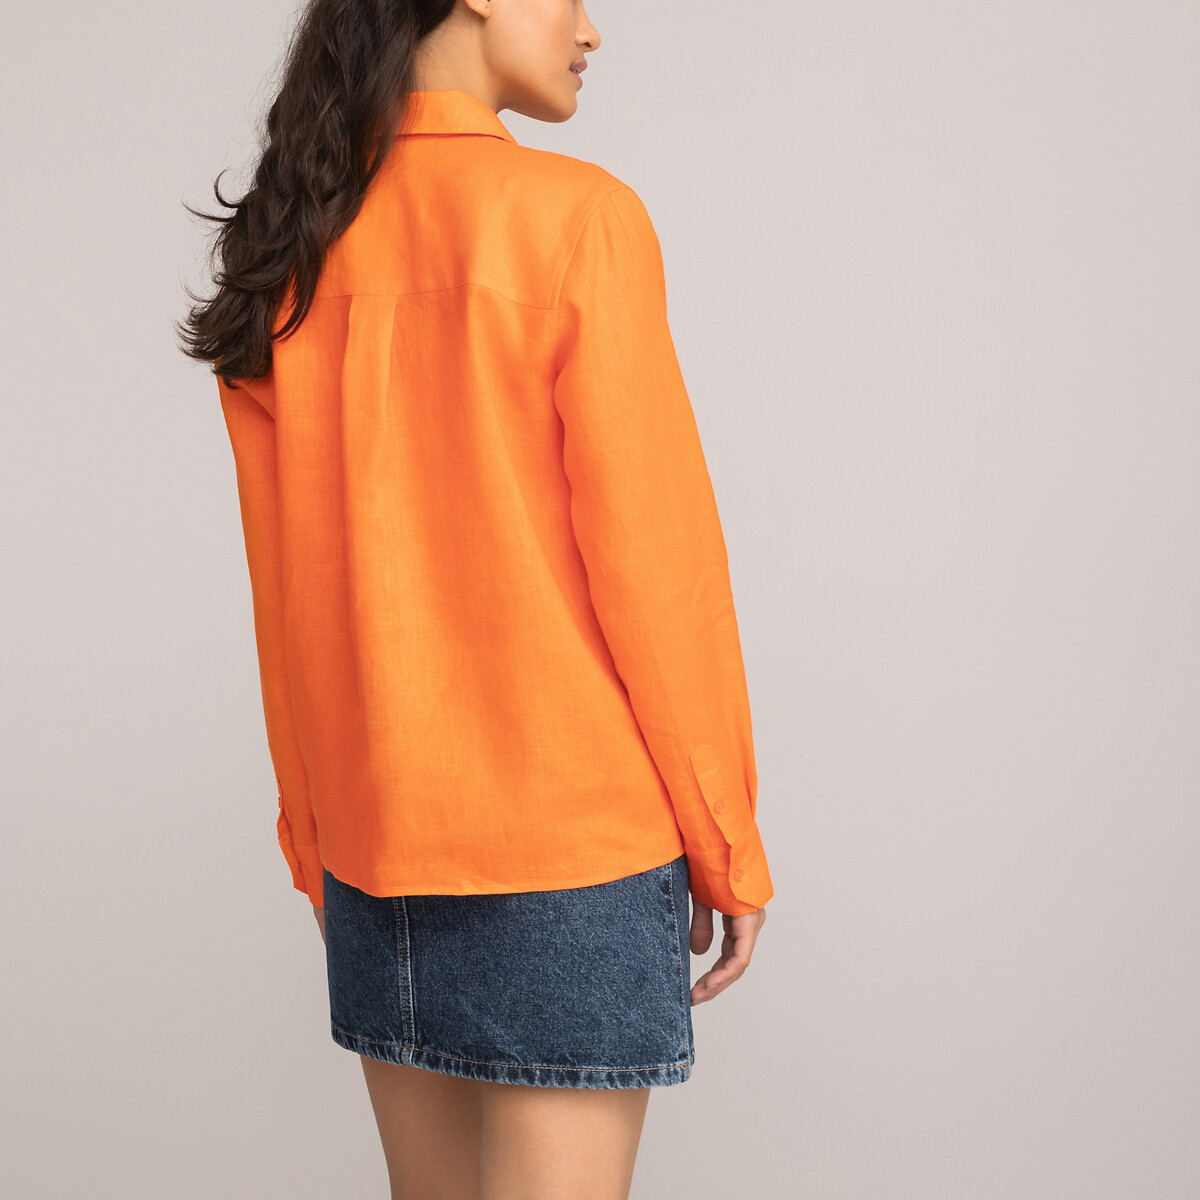 Рубашка Из льна с длинными рукавами 46 (FR) - 52 (RUS) оранжевый LaRedoute, размер 46 (FR) - 52 (RUS) Рубашка Из льна с длинными рукавами 46 (FR) - 52 (RUS) оранжевый - фото 4